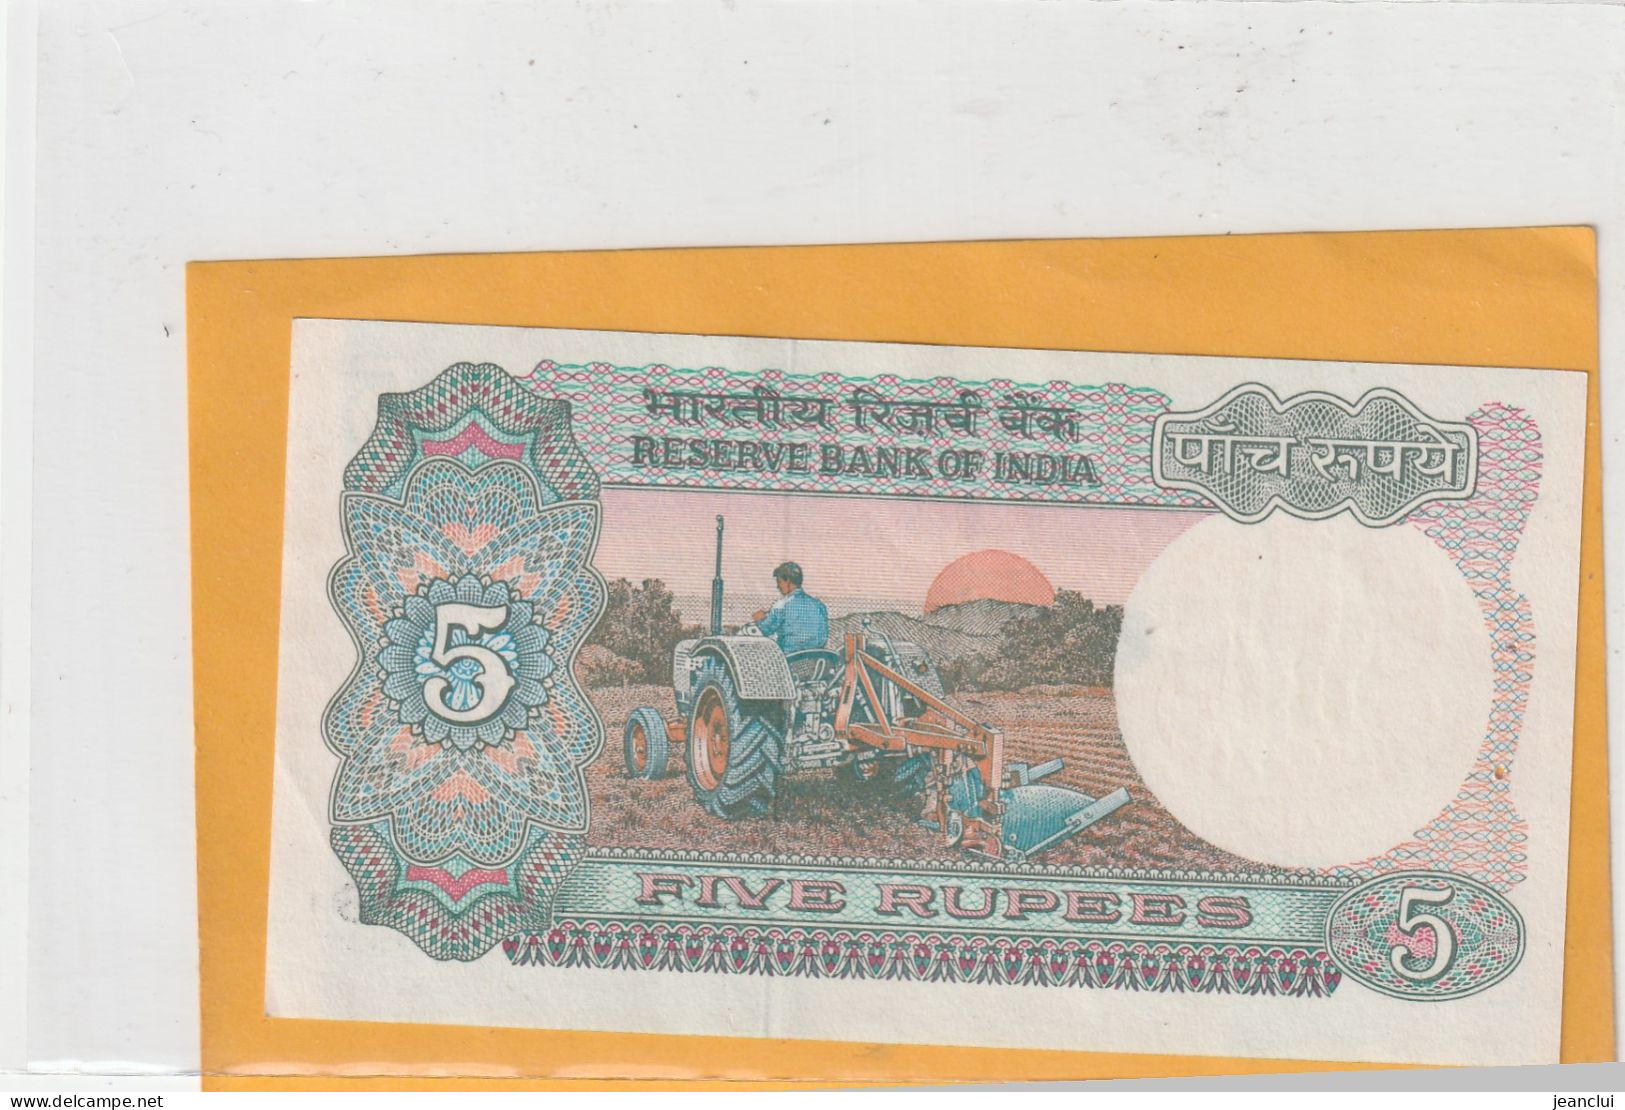 RESERVE BANK OF INDIA . 5 RUPEE .  N D .  N° 77S 152218  .  2 SCANNES - Indien